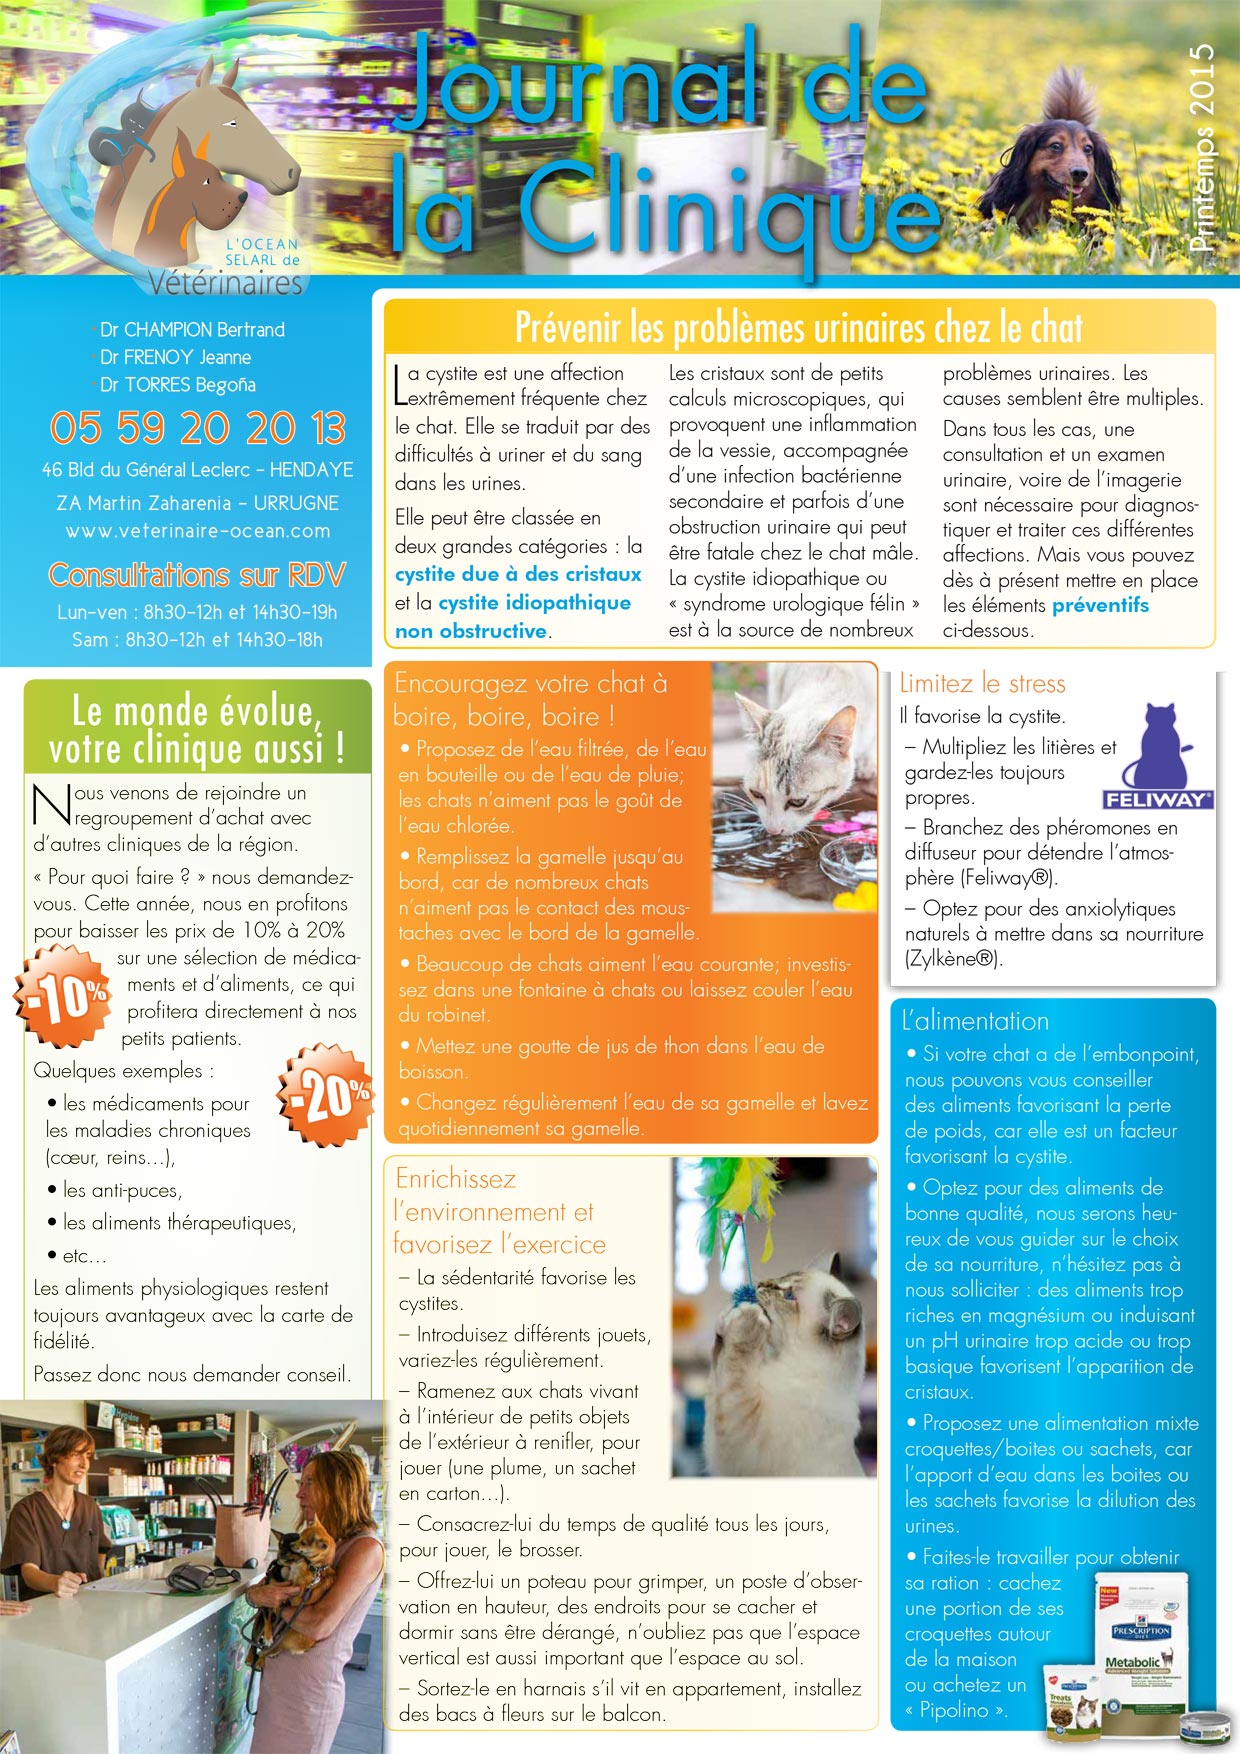 Le Journal de la Clinique - Printemps 2015 page 1